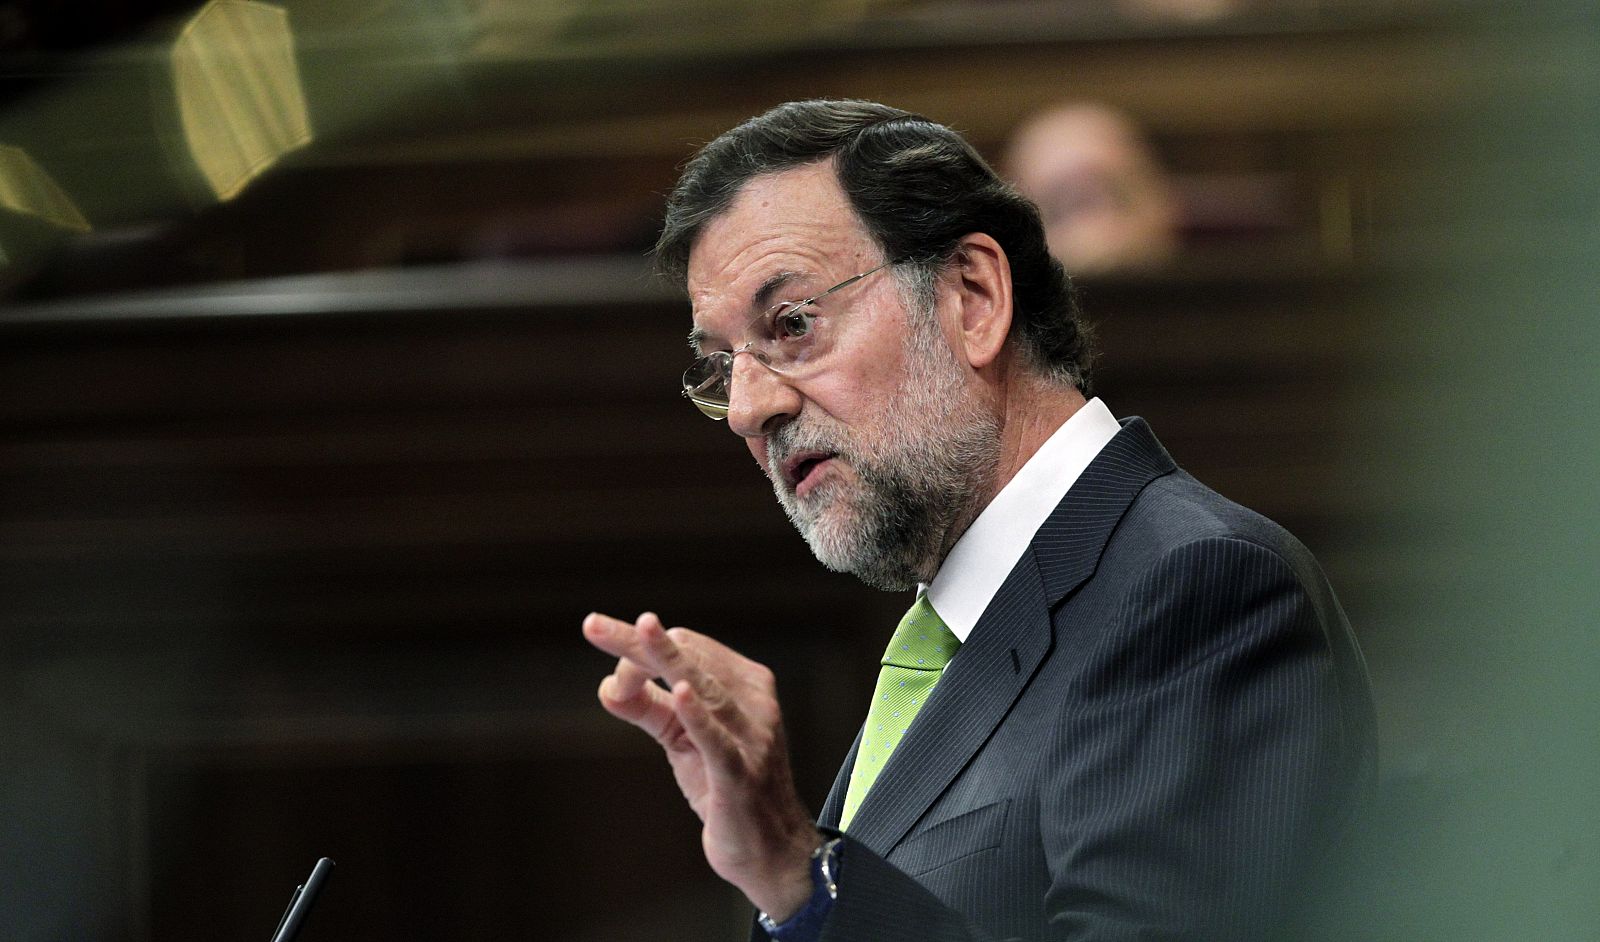 El líder del PP, Mariano Rajoy, en imagen de archivo